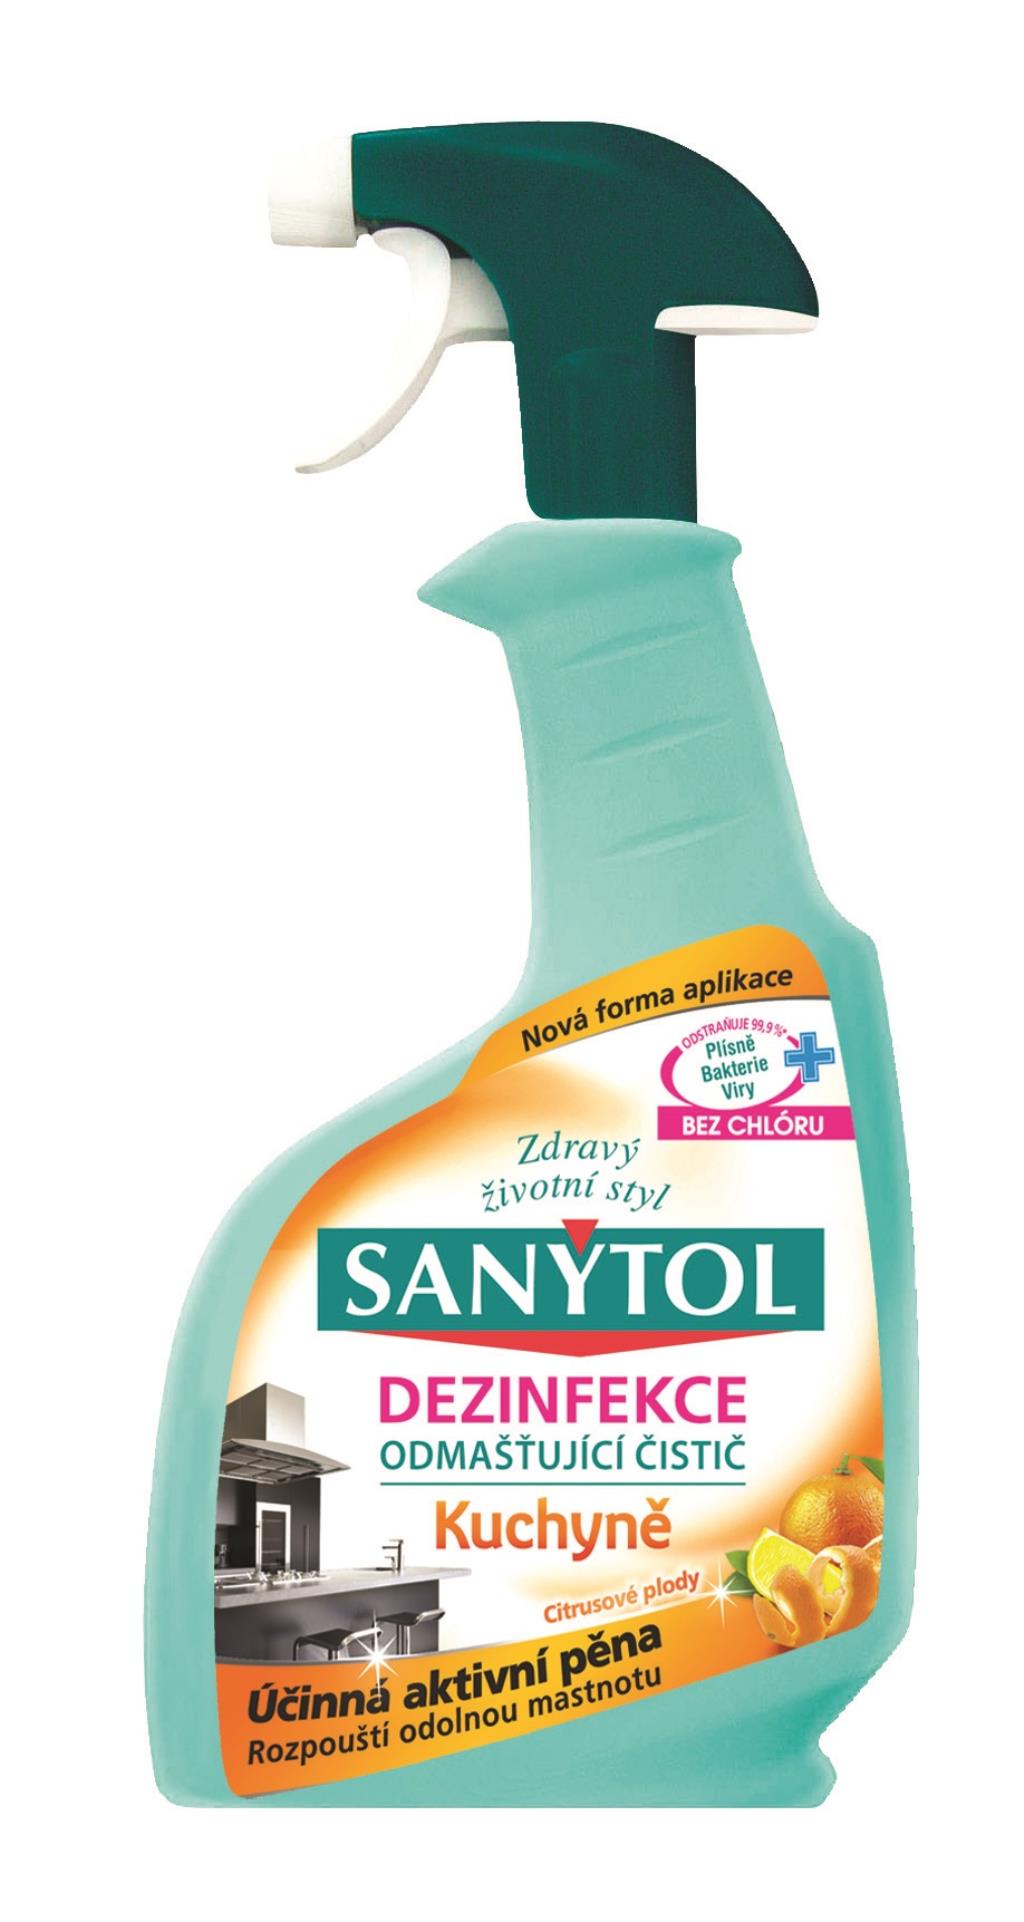 Sanytol Dezinfekční čistič na kuchyně Sanytol, 500 ml